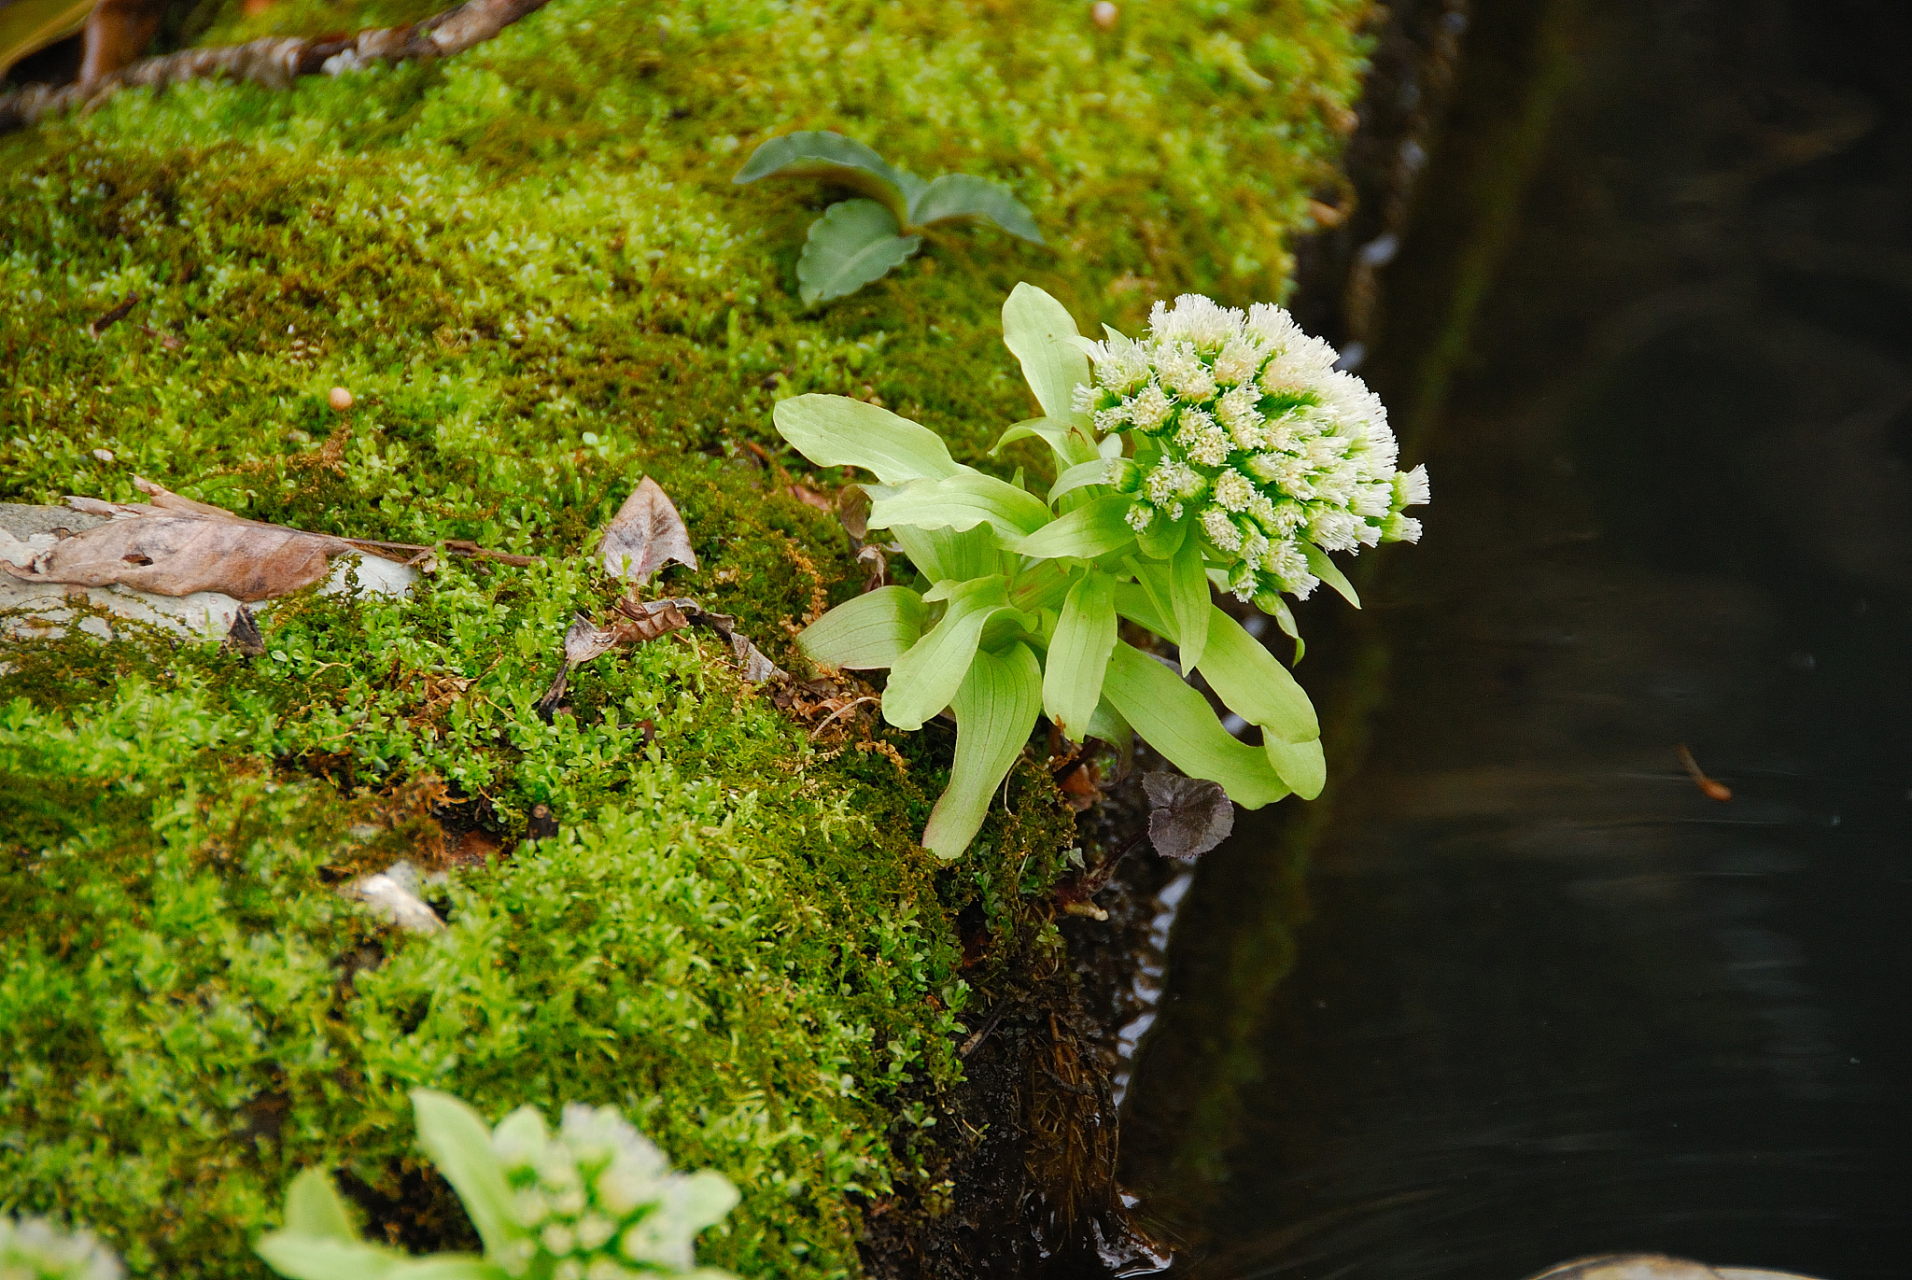 即使是微小的苔花,也要像牡丹盛开——很正能量